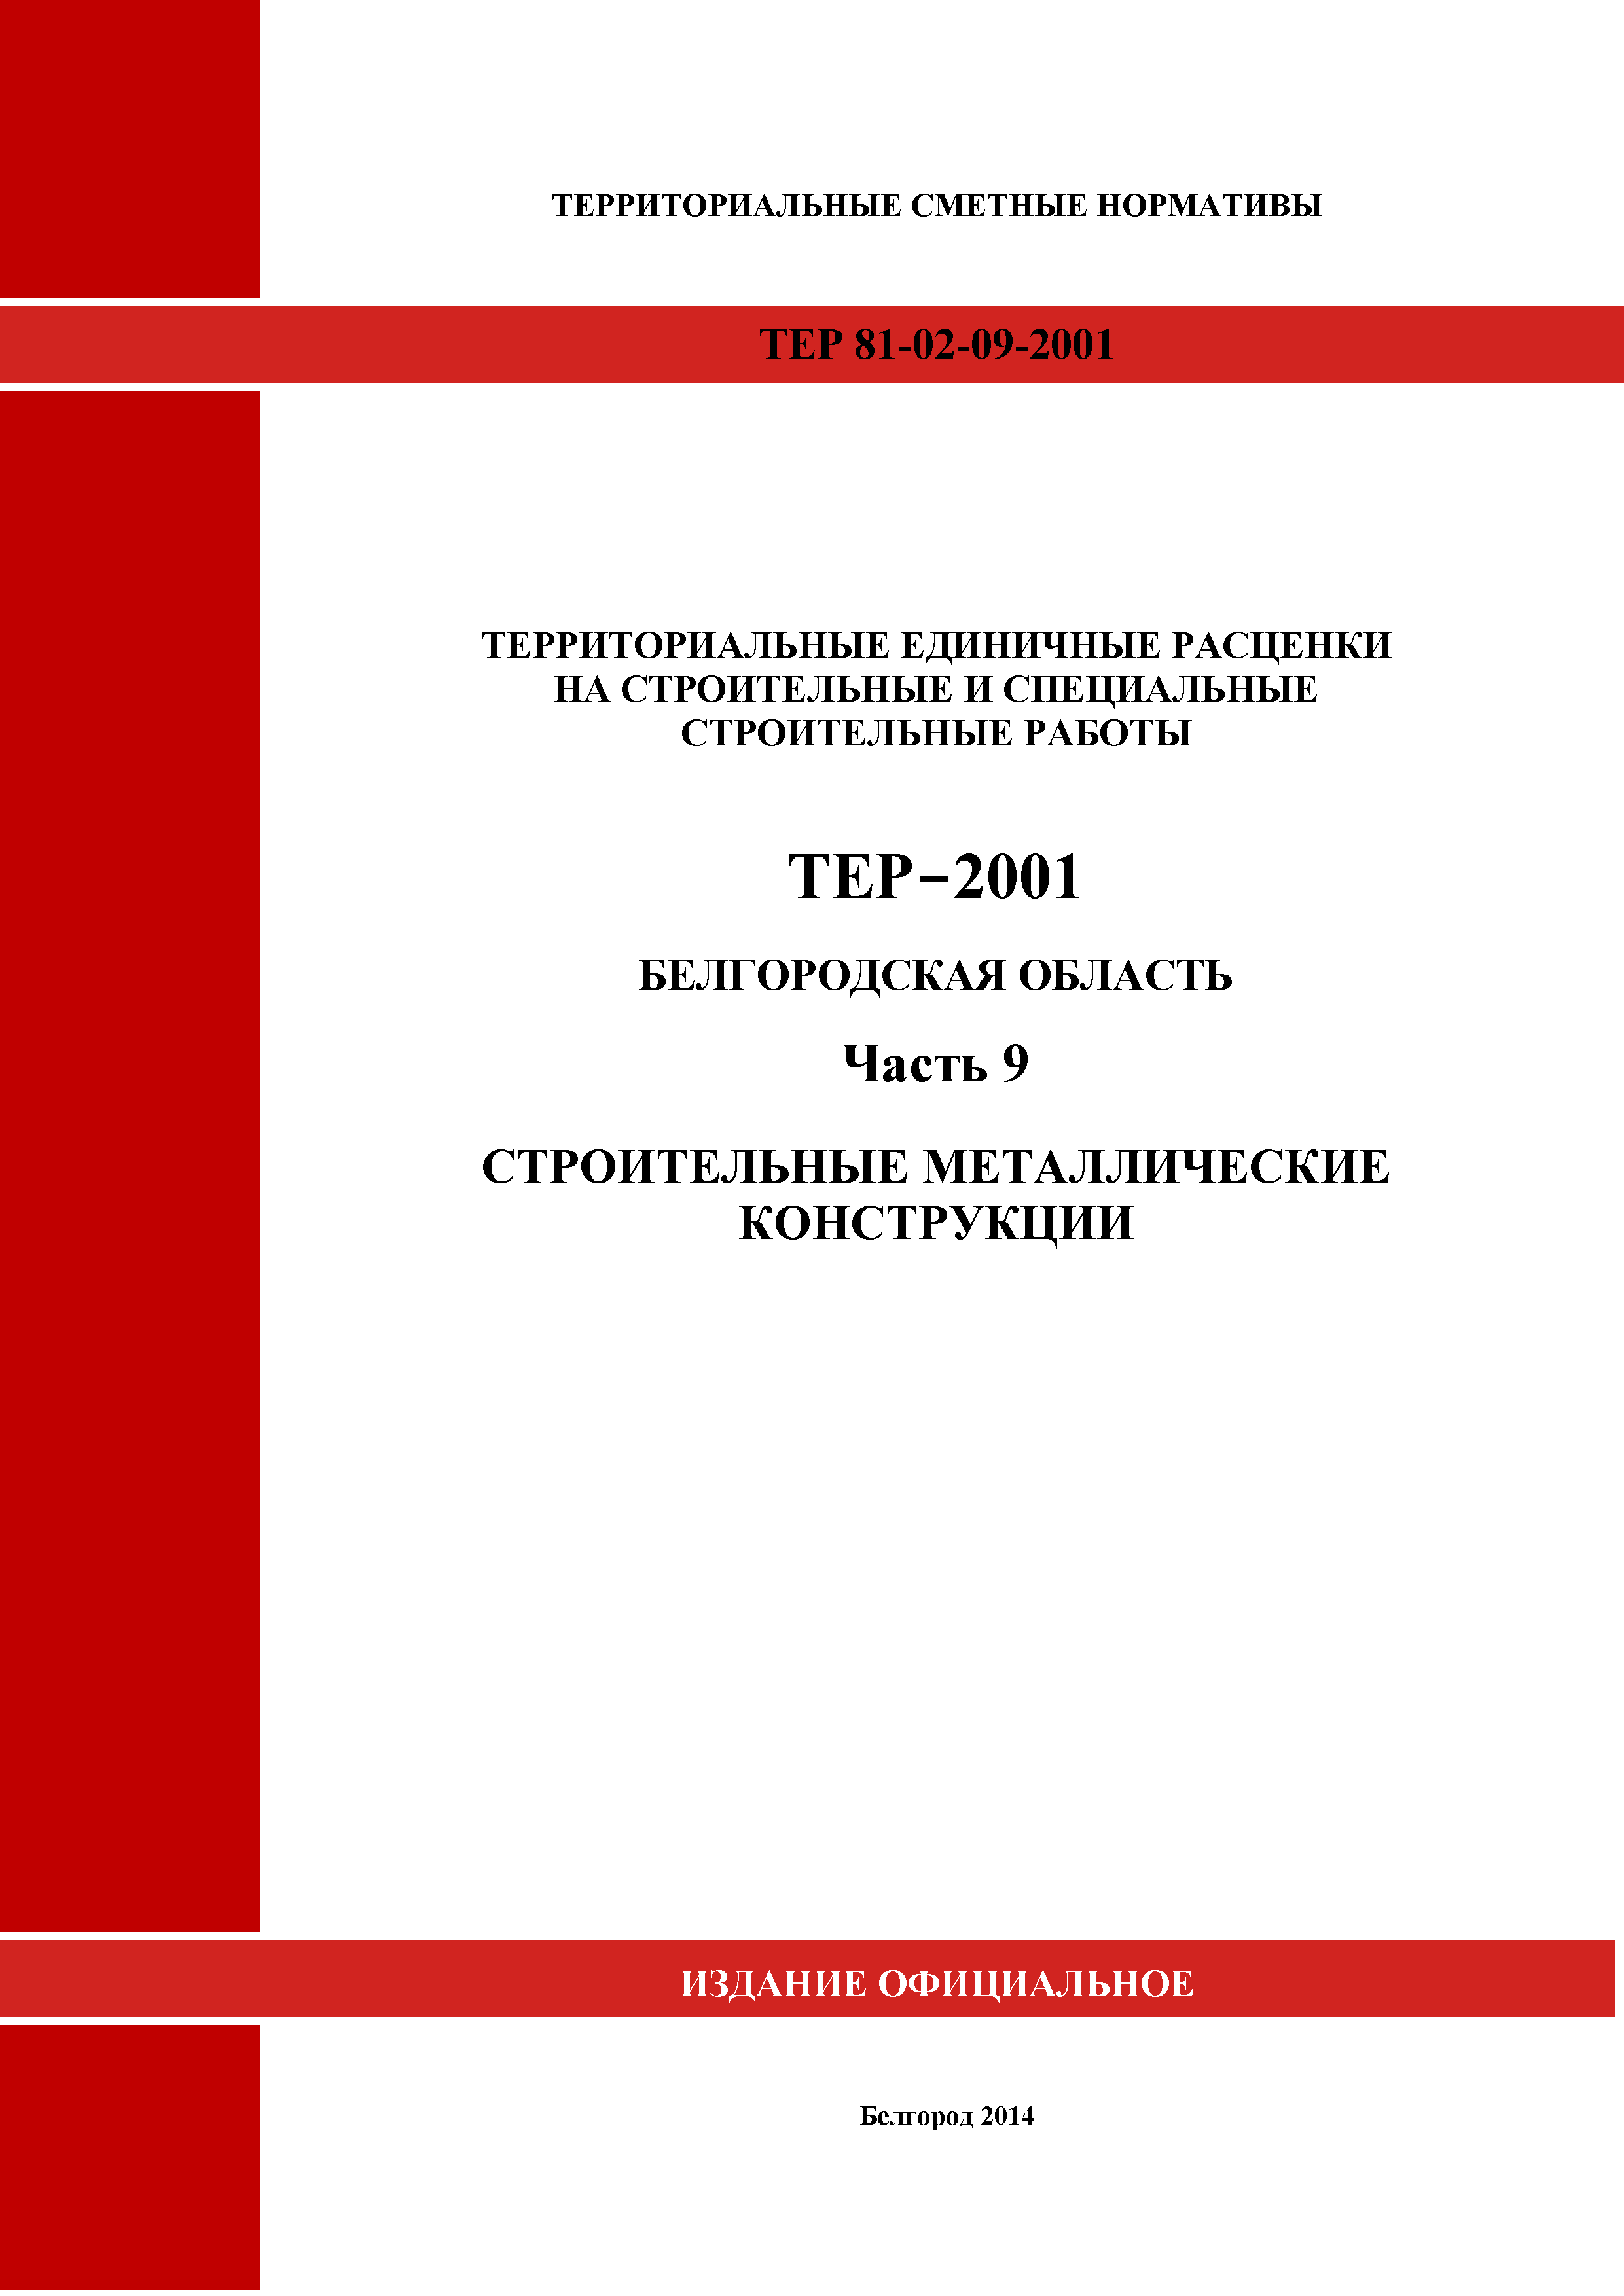 ТЕР Белгородская область 81-02-09-2001